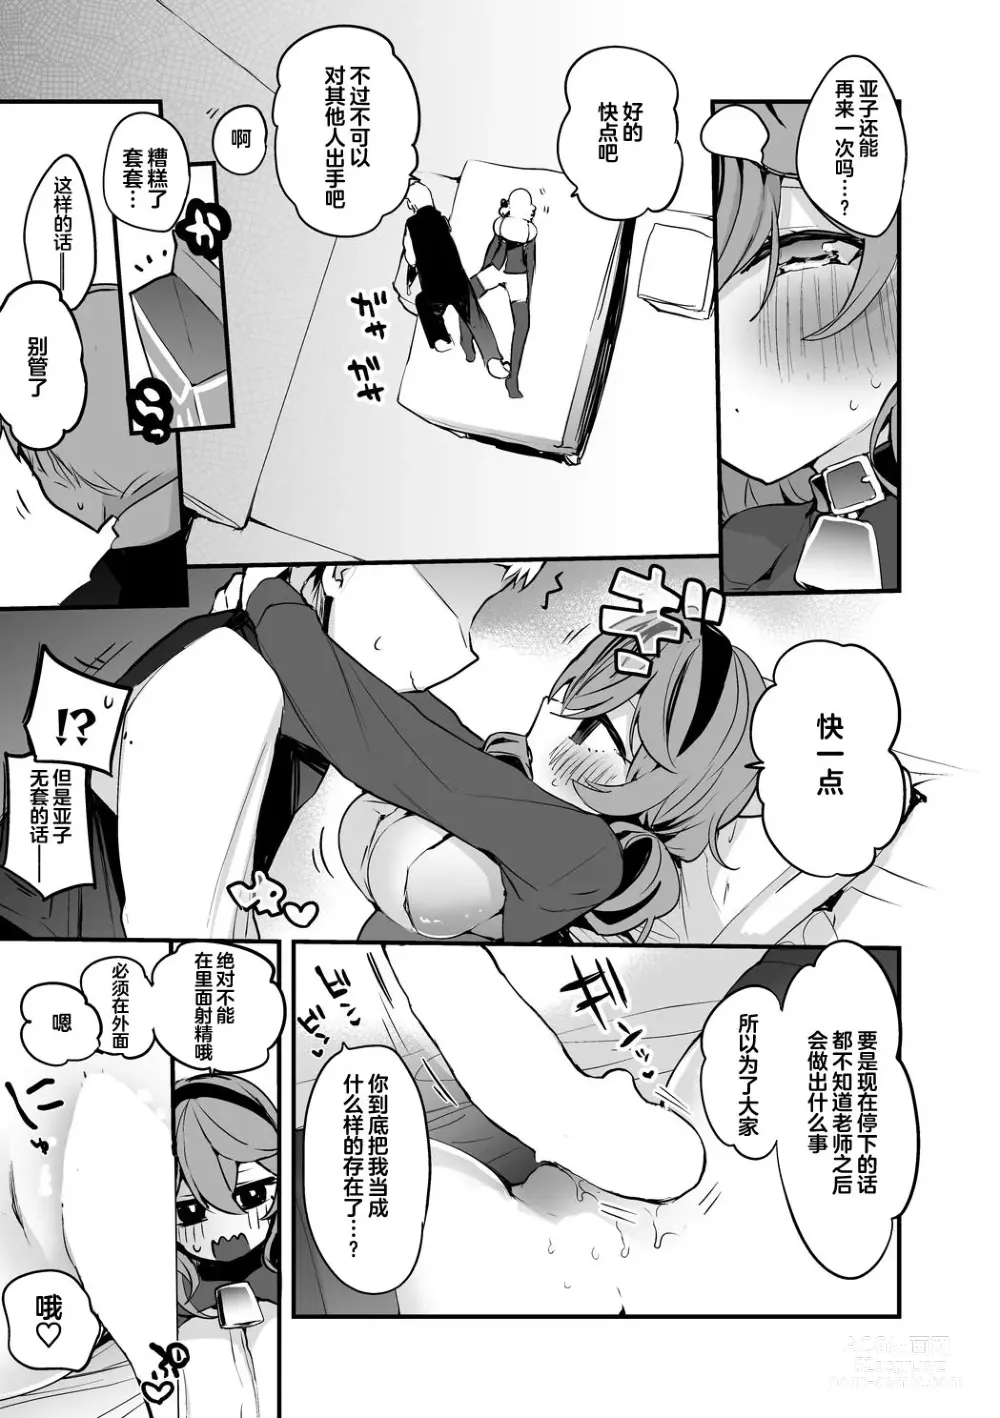 Page 14 of doujinshi Seishun x Ero x Matome Hon